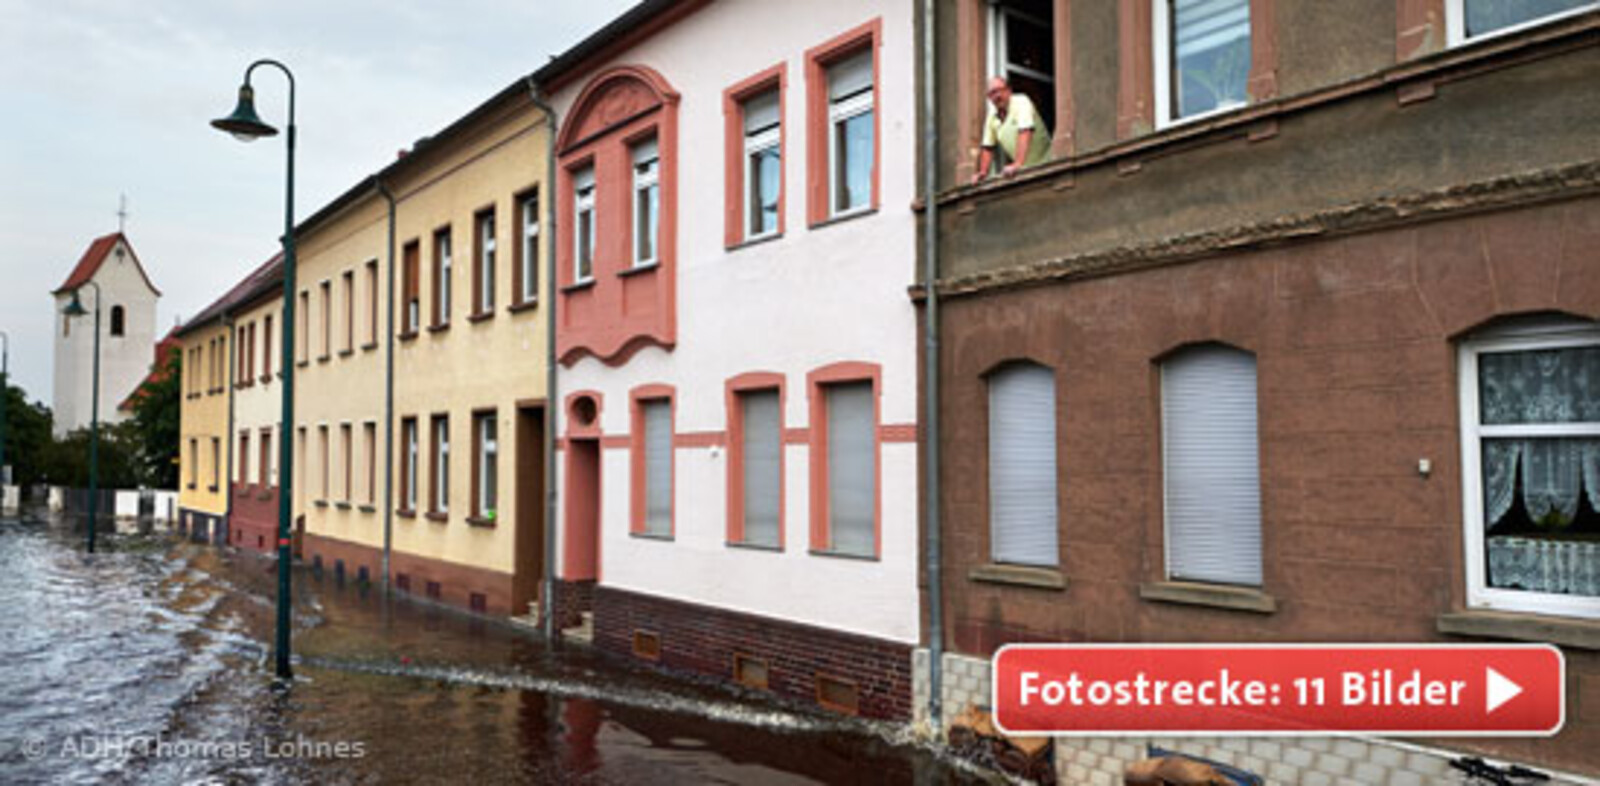 Der kleine Ort Aken in Sachsen-Anhalt war während der Hochwasserkatastrophe wie leergefegt